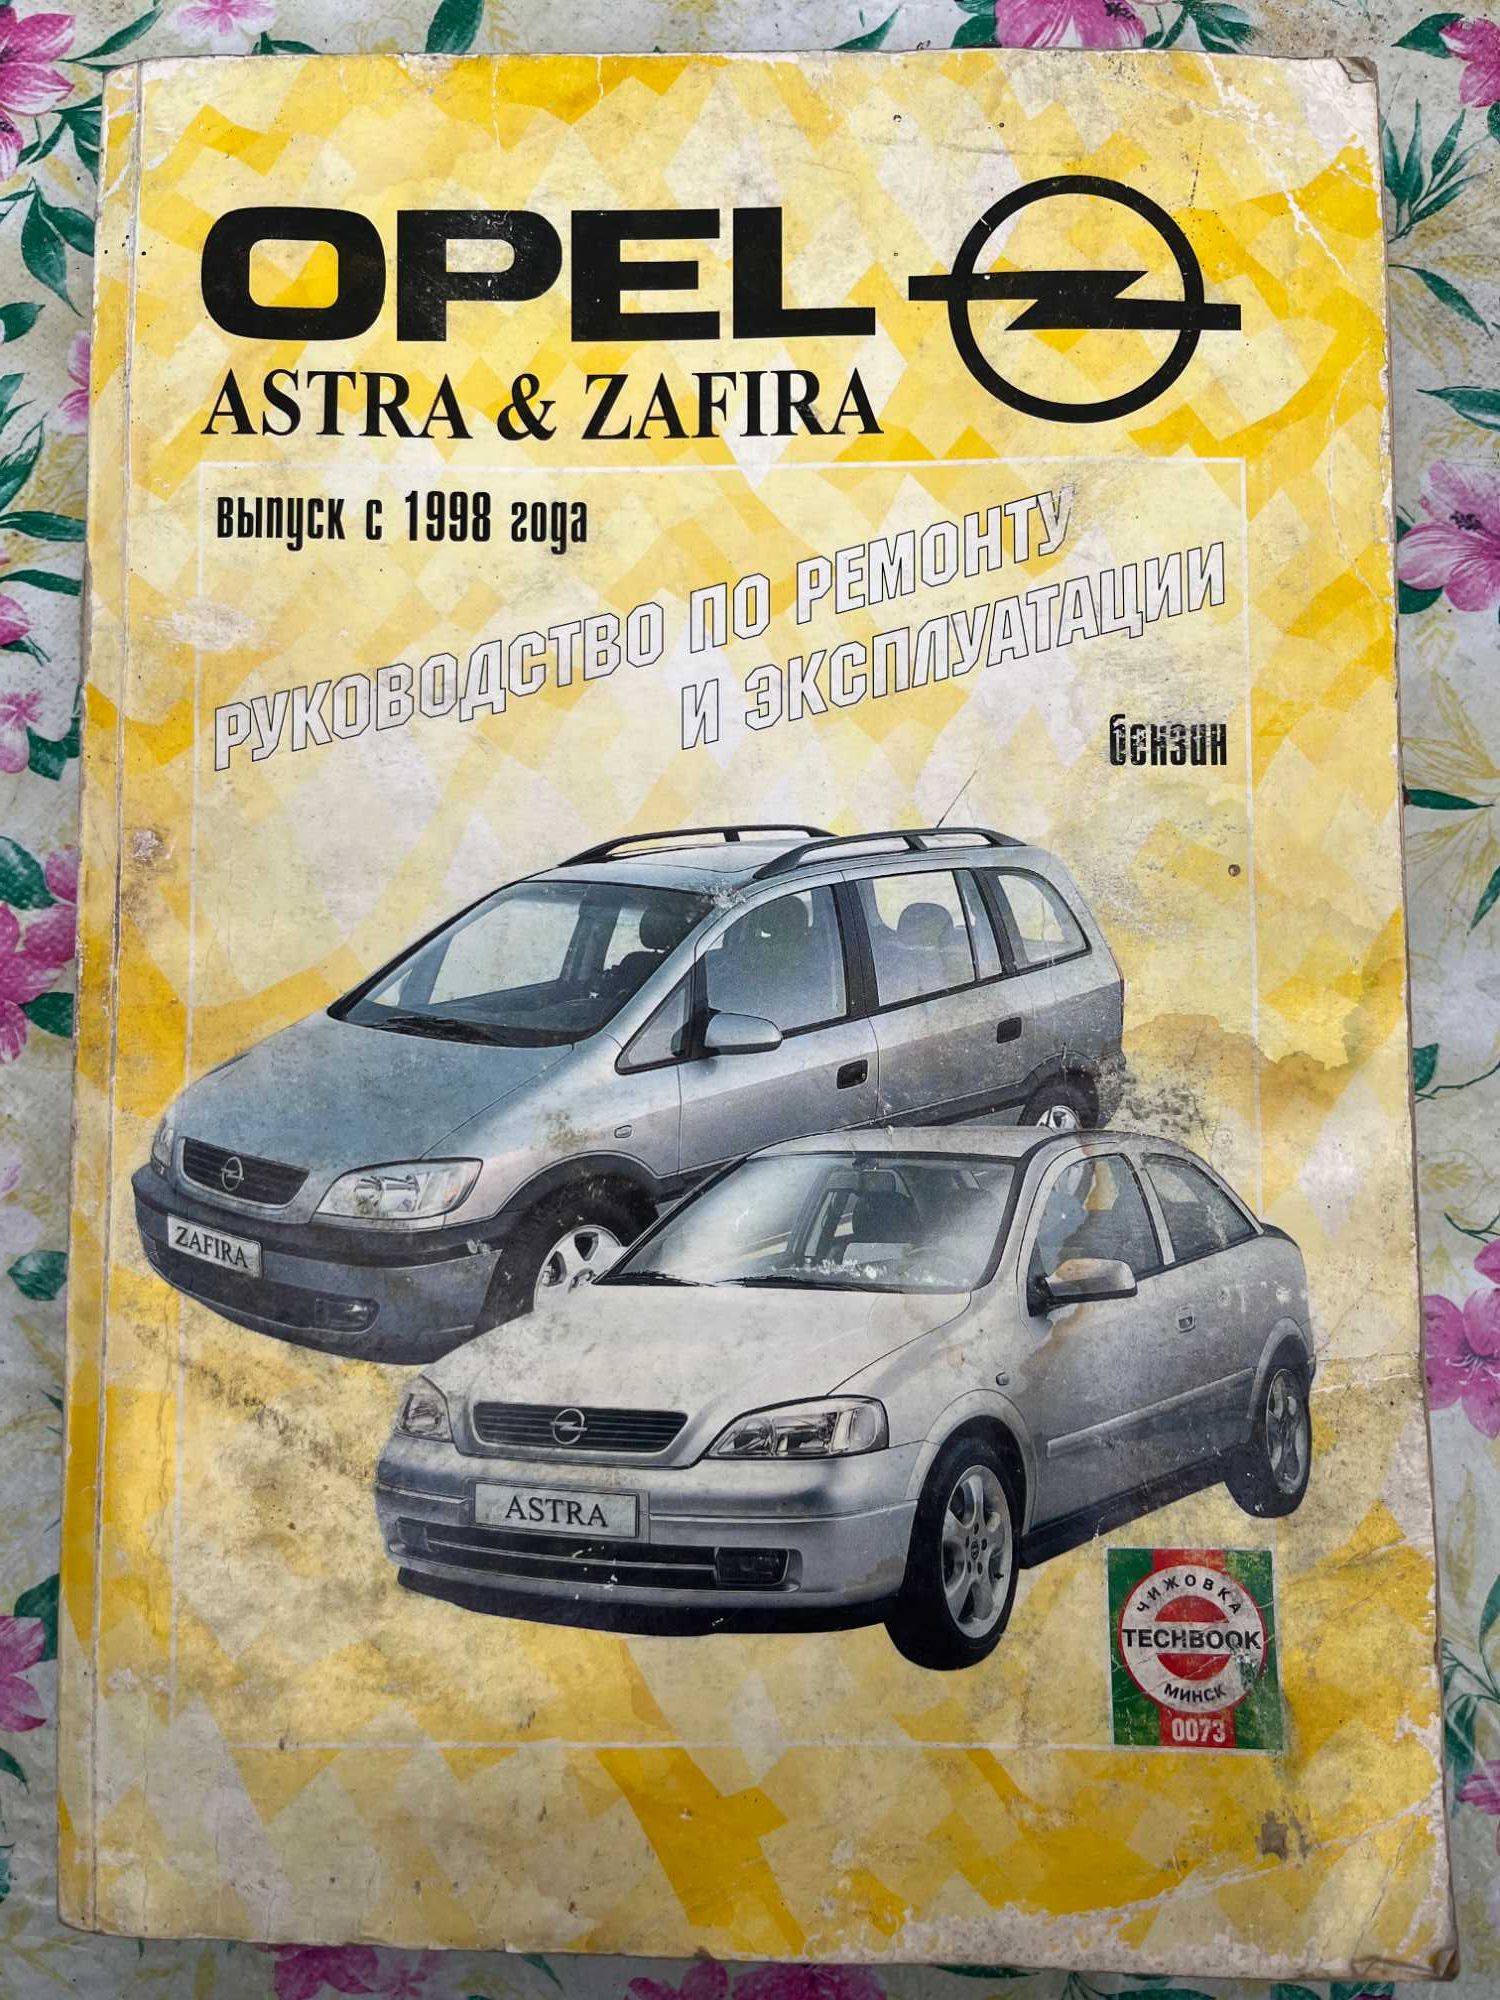 Opel Astra Zefira (бензин ),выпуск с 1998 гРук-во по ремонту и эксплуа